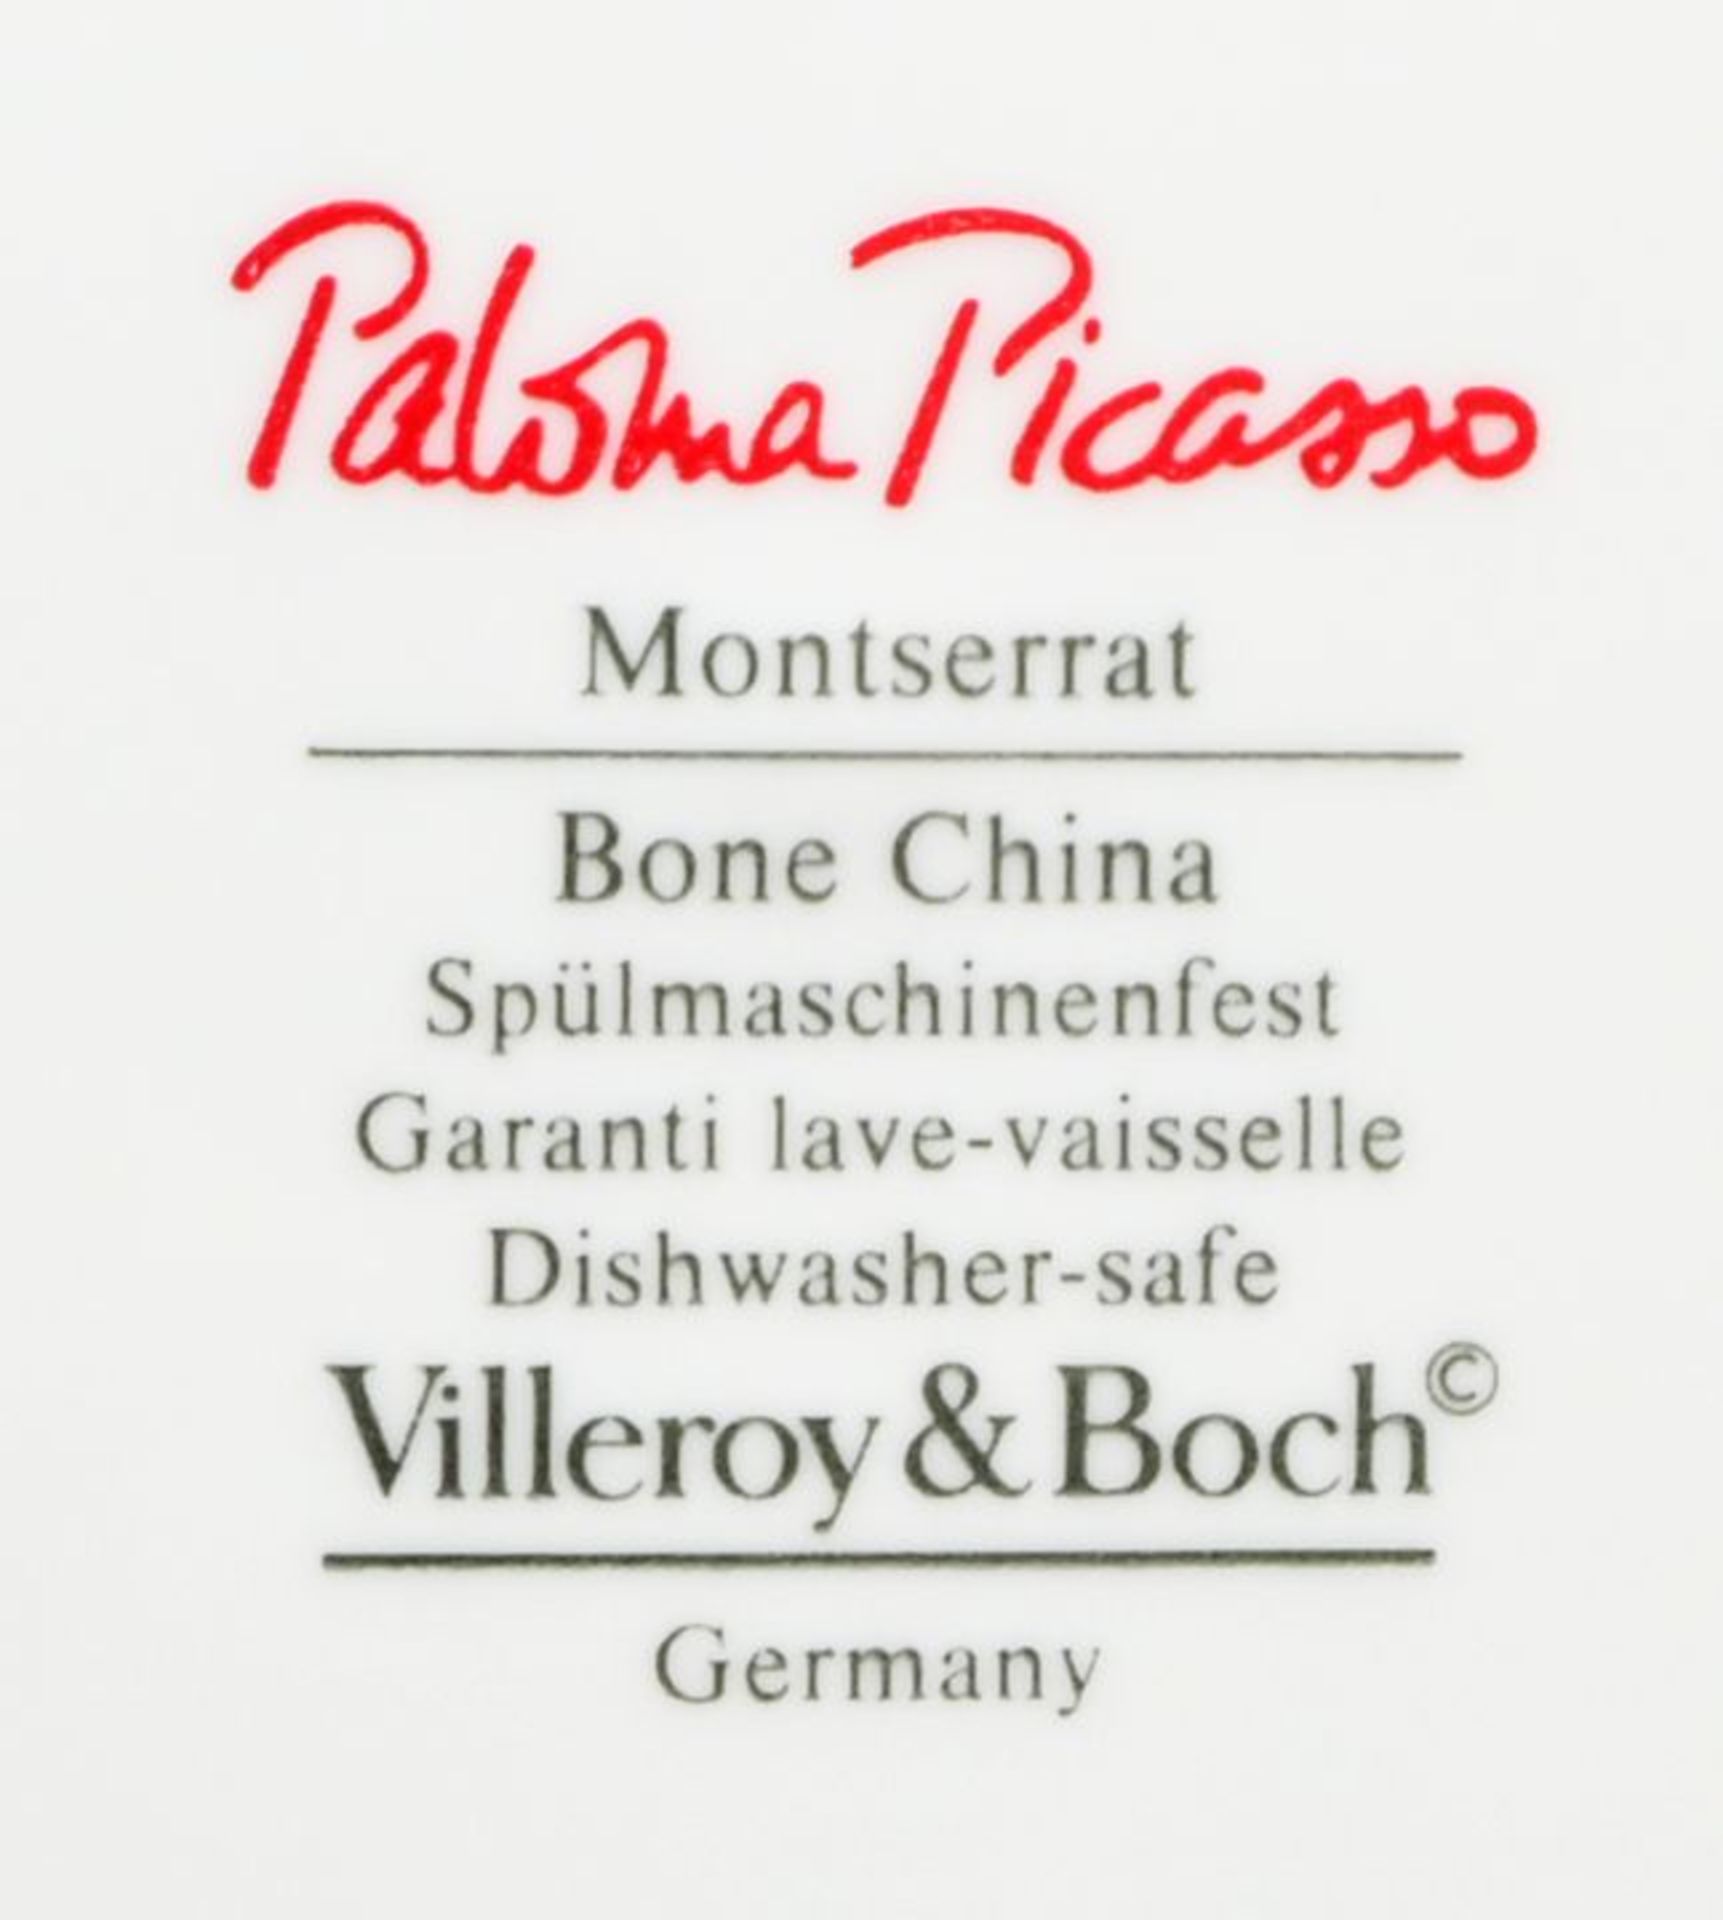 Gr. Restservice, Villeroy & Boch, Paloma Picasso / Remaining service - Bild 2 aus 3